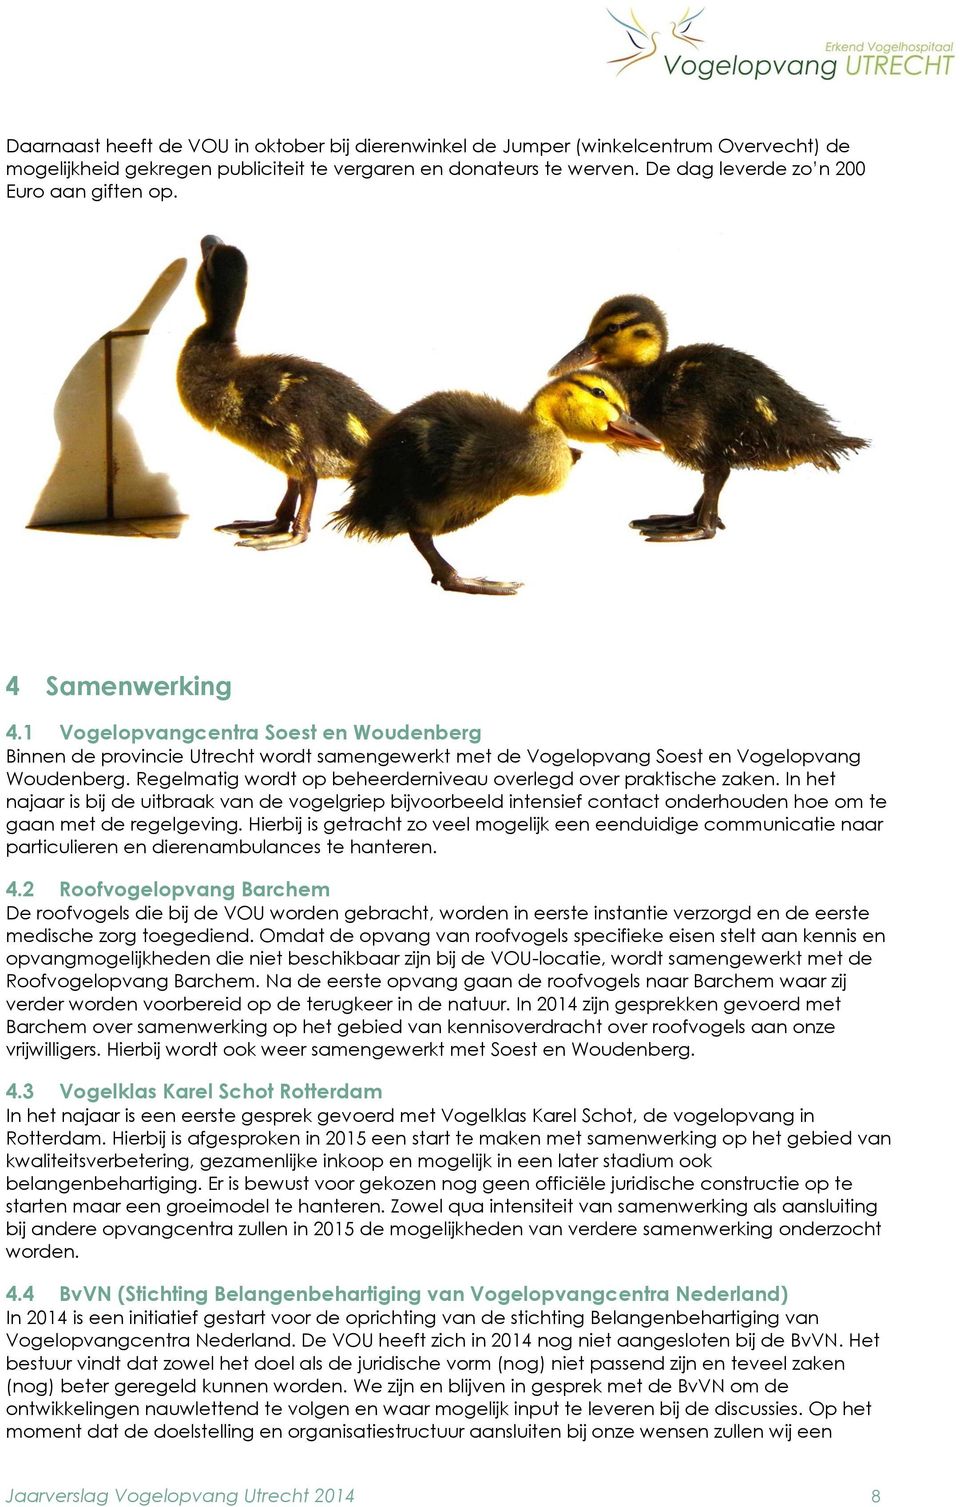 Regelmatig wordt op beheerderniveau overlegd over praktische zaken. In het najaar is bij de uitbraak van de vogelgriep bijvoorbeeld intensief contact onderhouden hoe om te gaan met de regelgeving.